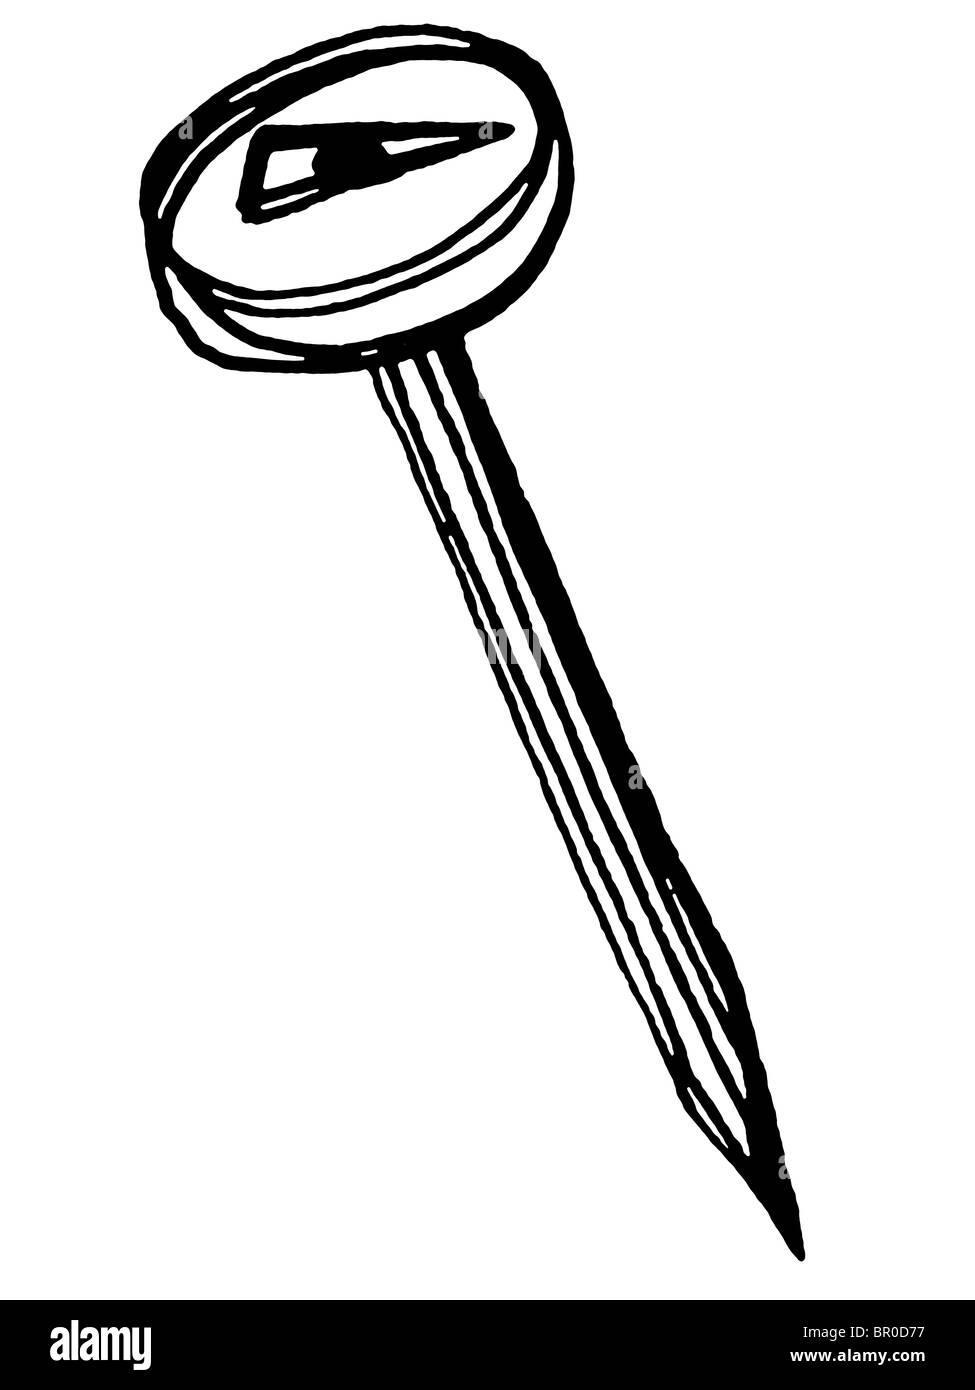 Une illustration en noir et blanc d'un thermomètre à viande Banque D'Images